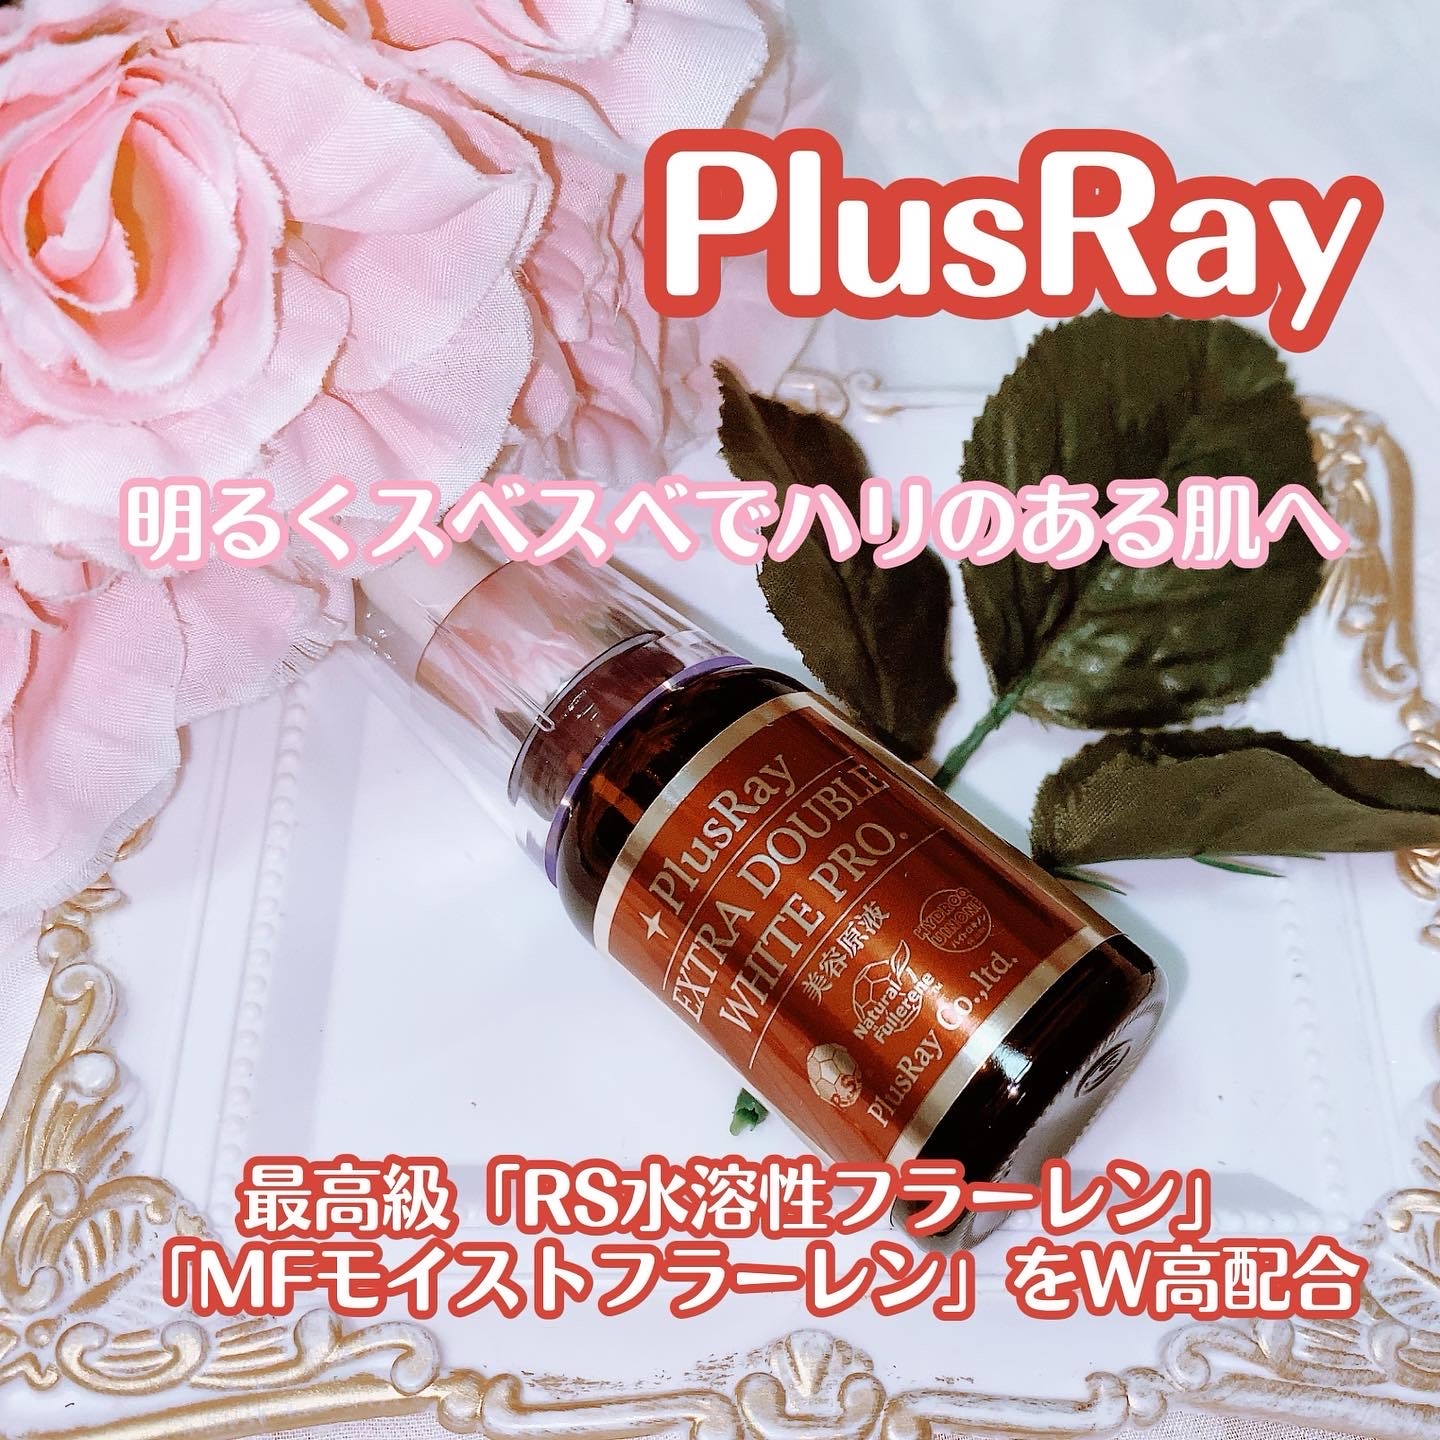 PlusRay(プラスレイ) エクストラ ダブルホワイト美容原液 プロフェッショナルの良い点・メリットに関する珈琲豆♡さんの口コミ画像1